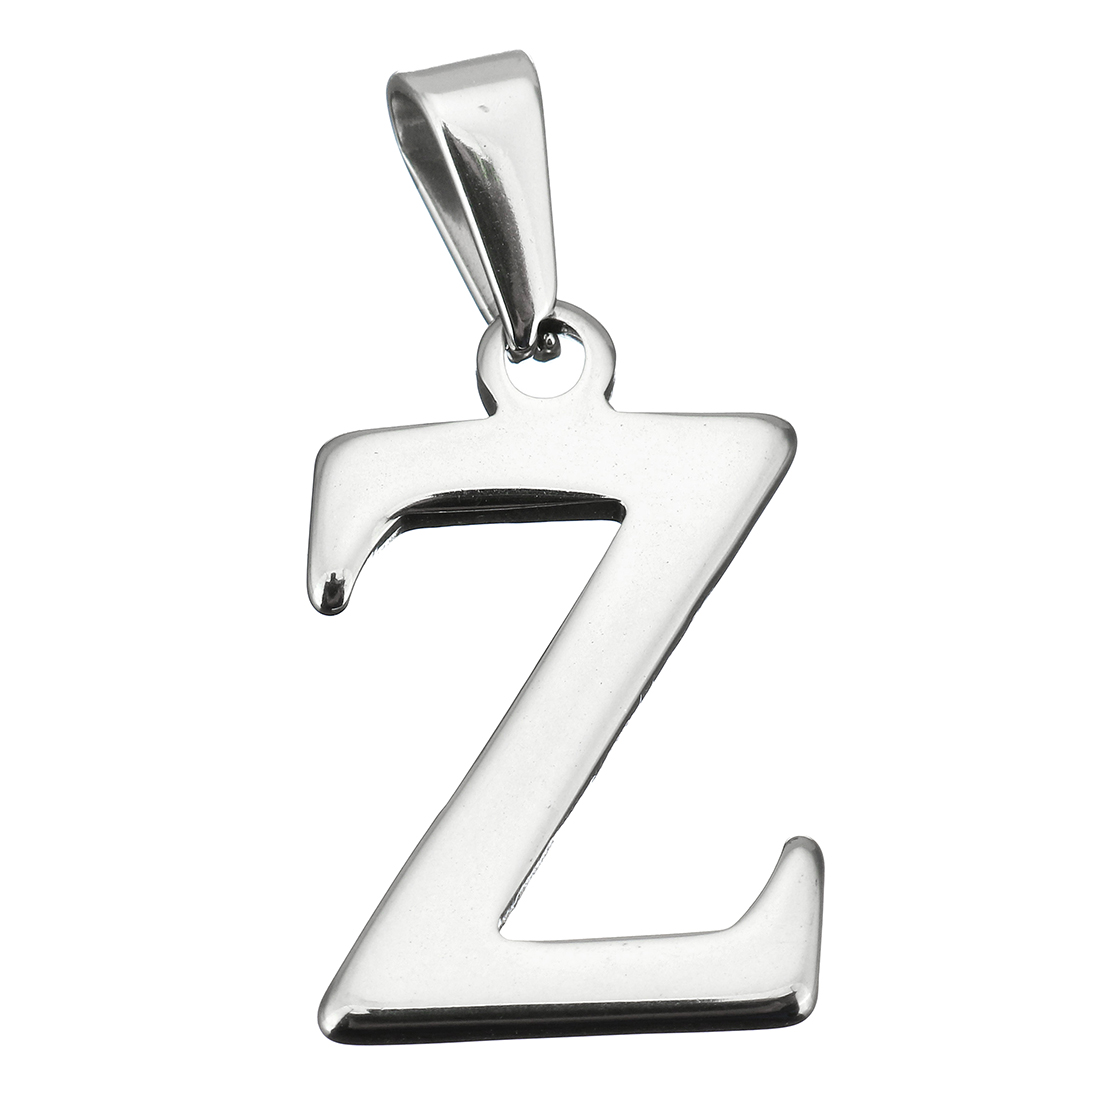 Письмо Z